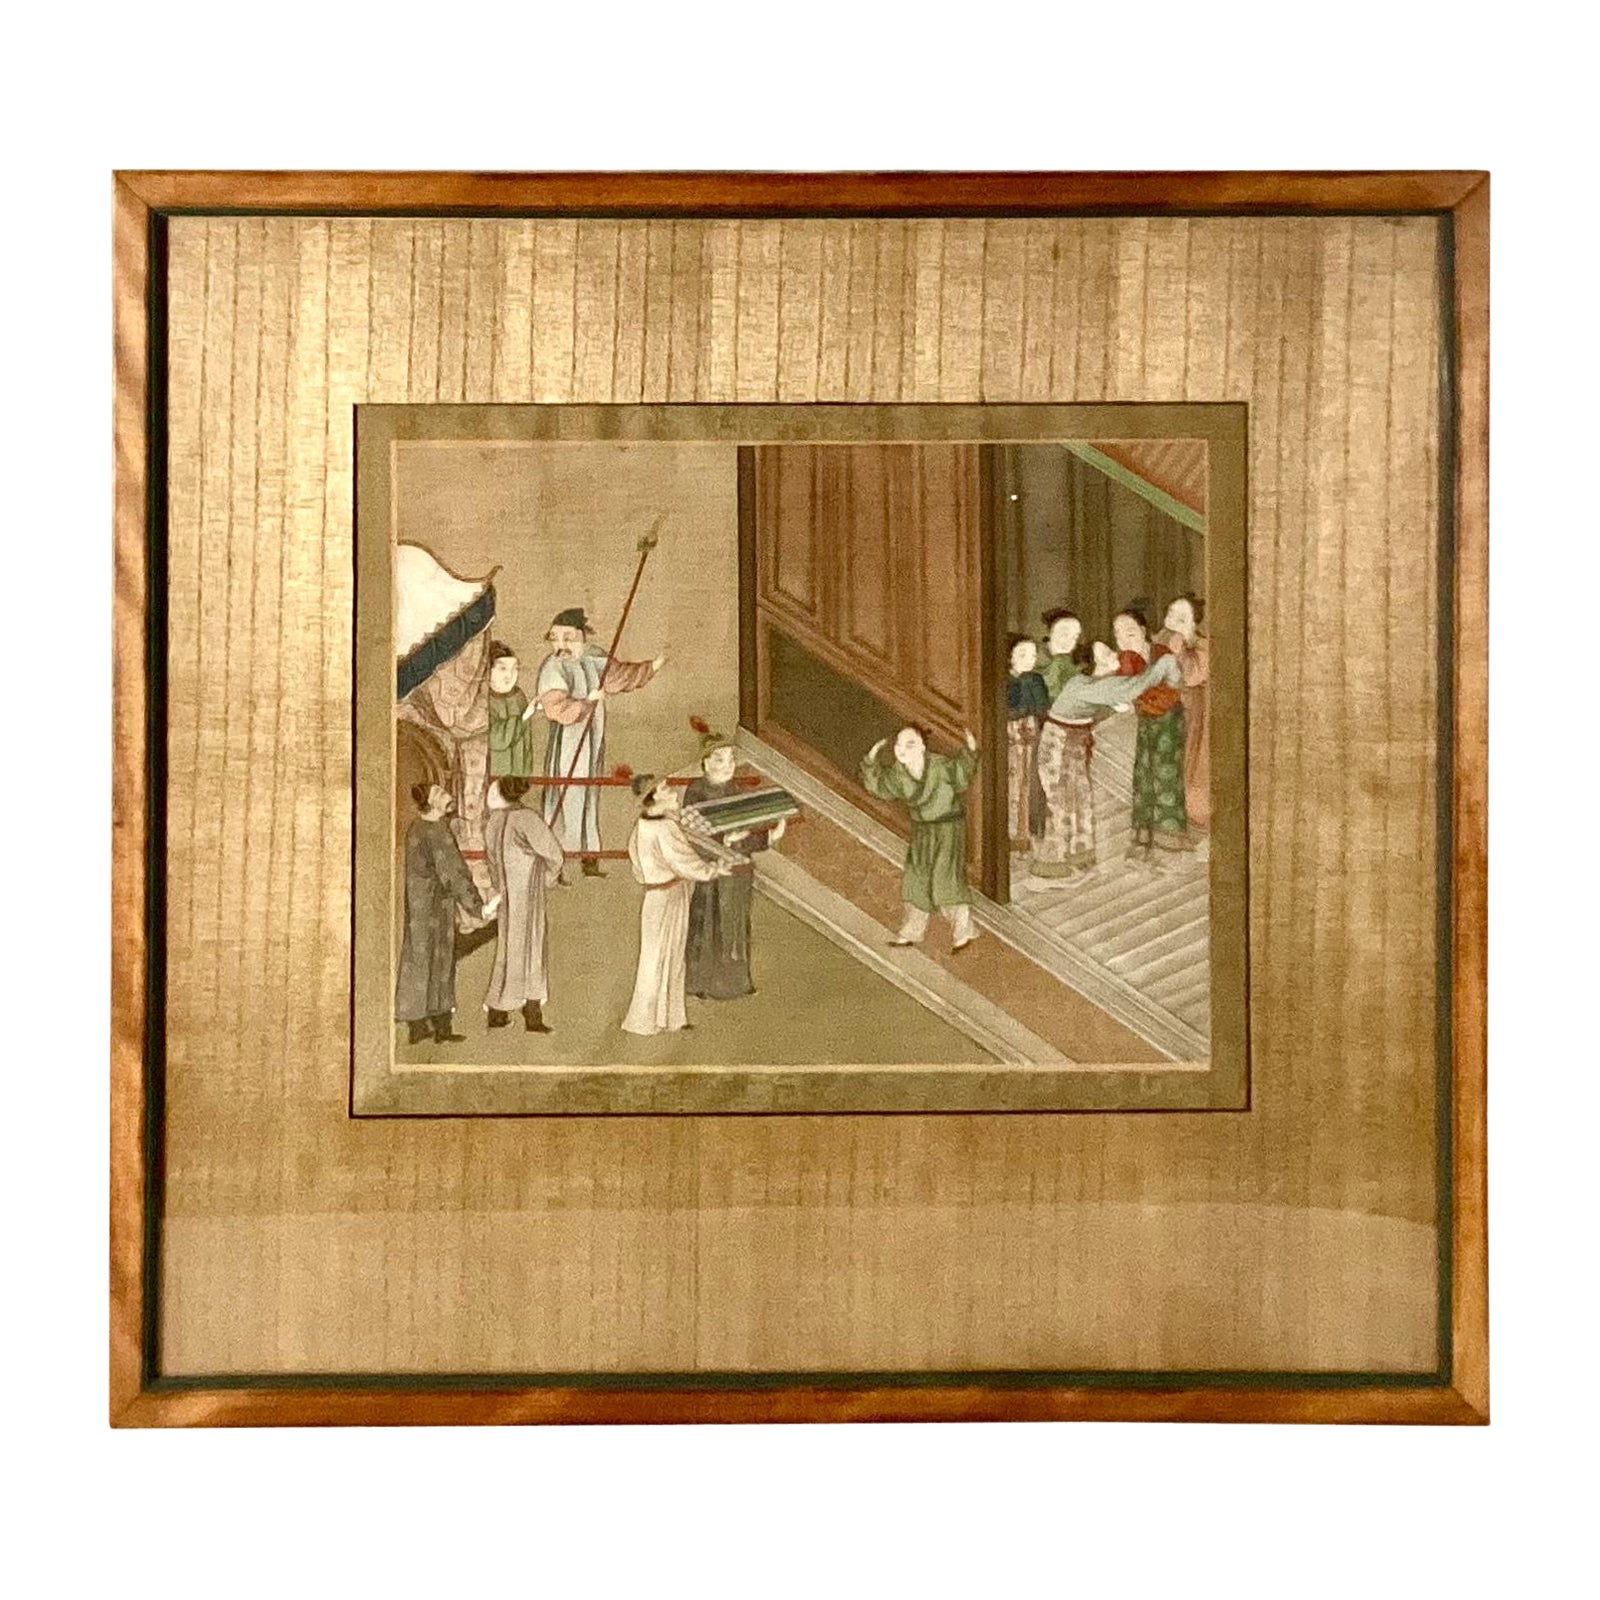 Peinture sur soie chinoise du XIXe siècle, encadrée